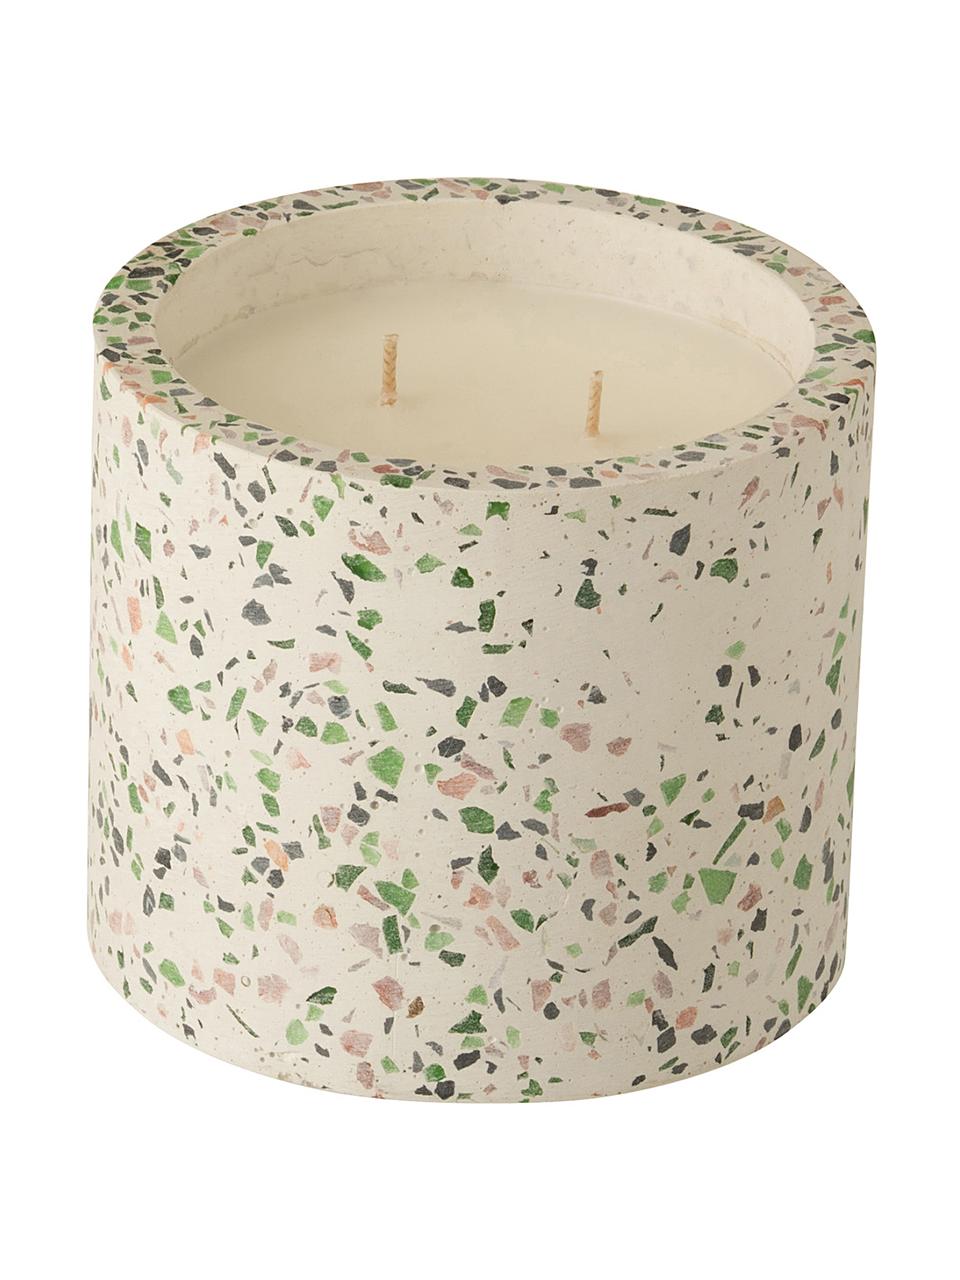 Vonná svíčka se dvěma knoty Terrazzo, Krémová, růžová, zelená, Ø 12 cm, V 11 cm